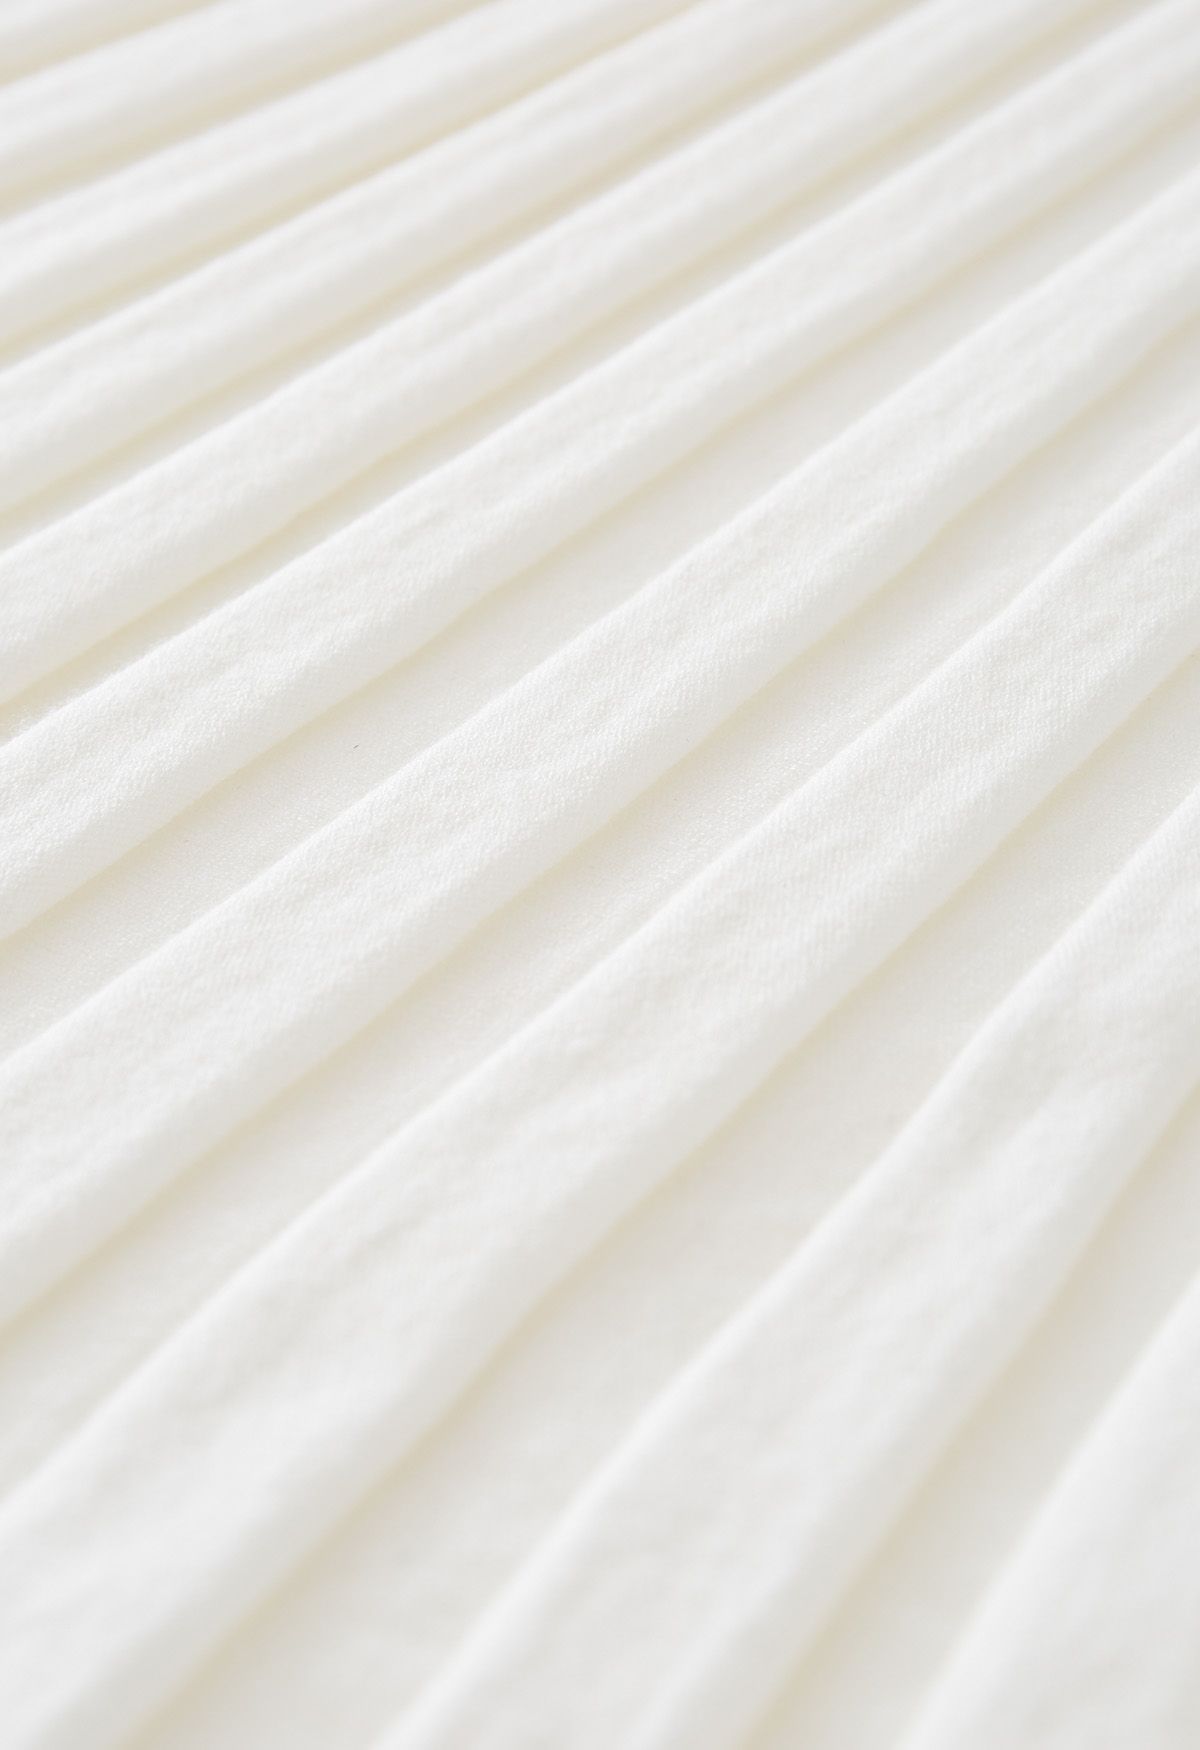 Ultra-Soft Lettuce Hem Knit Maxi Skirt in White